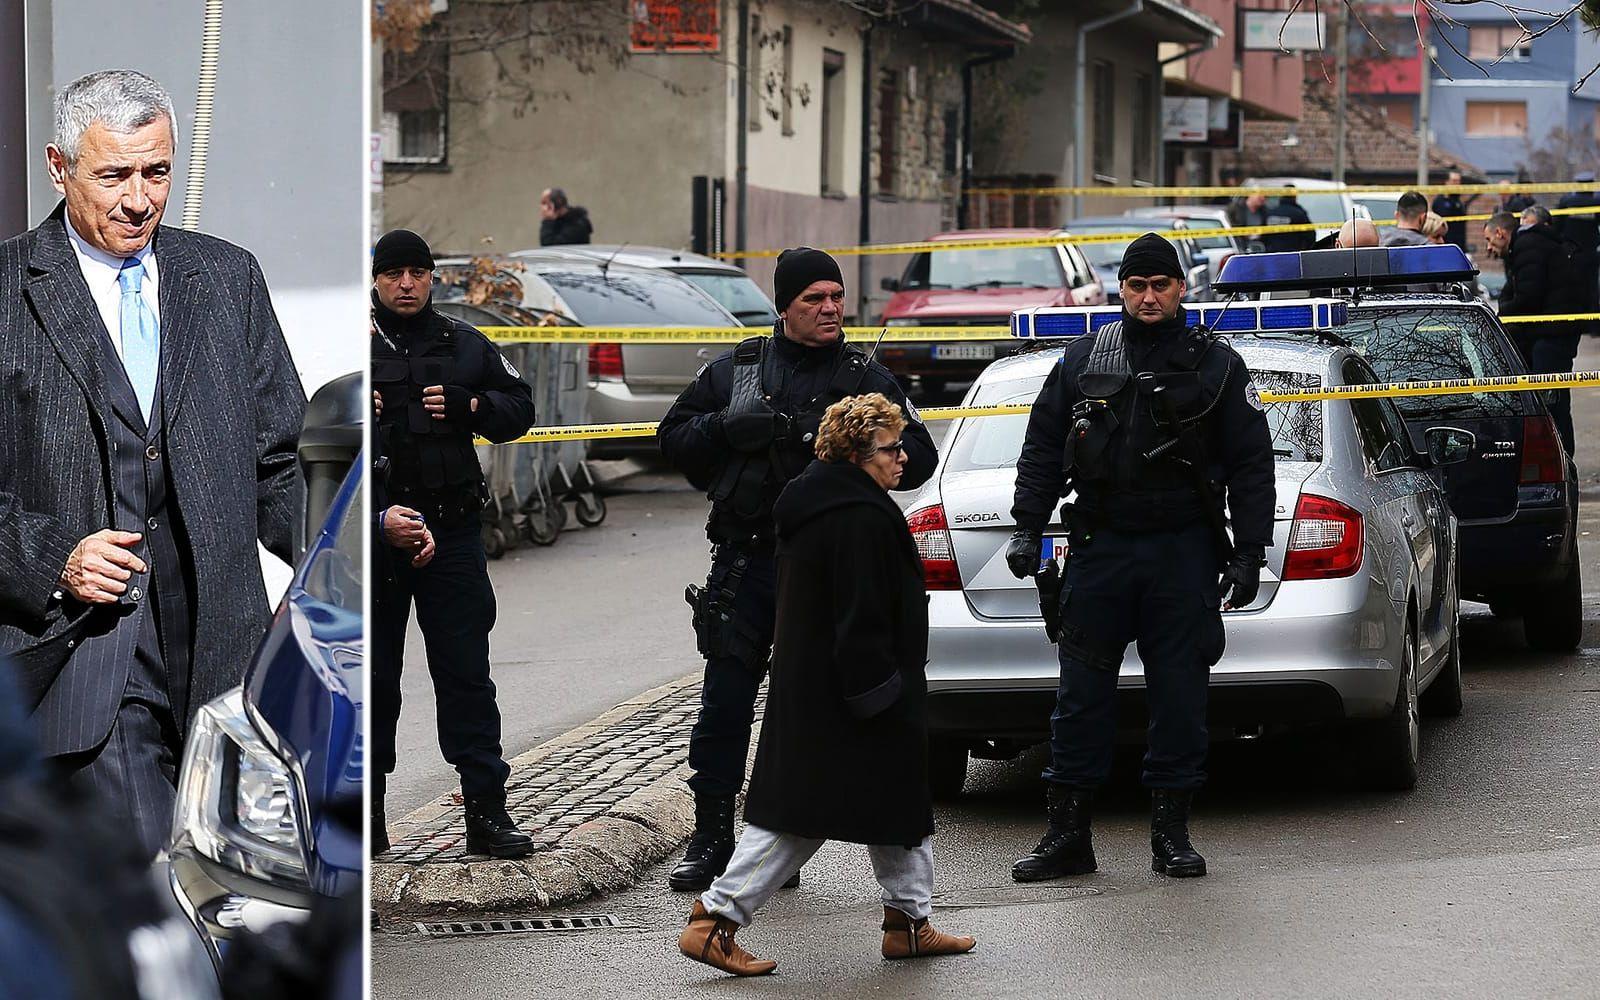 Skytten öppnade eld från ett förbipasserande fordon och Ivanovic träffades av flera skott.BILD: AP
